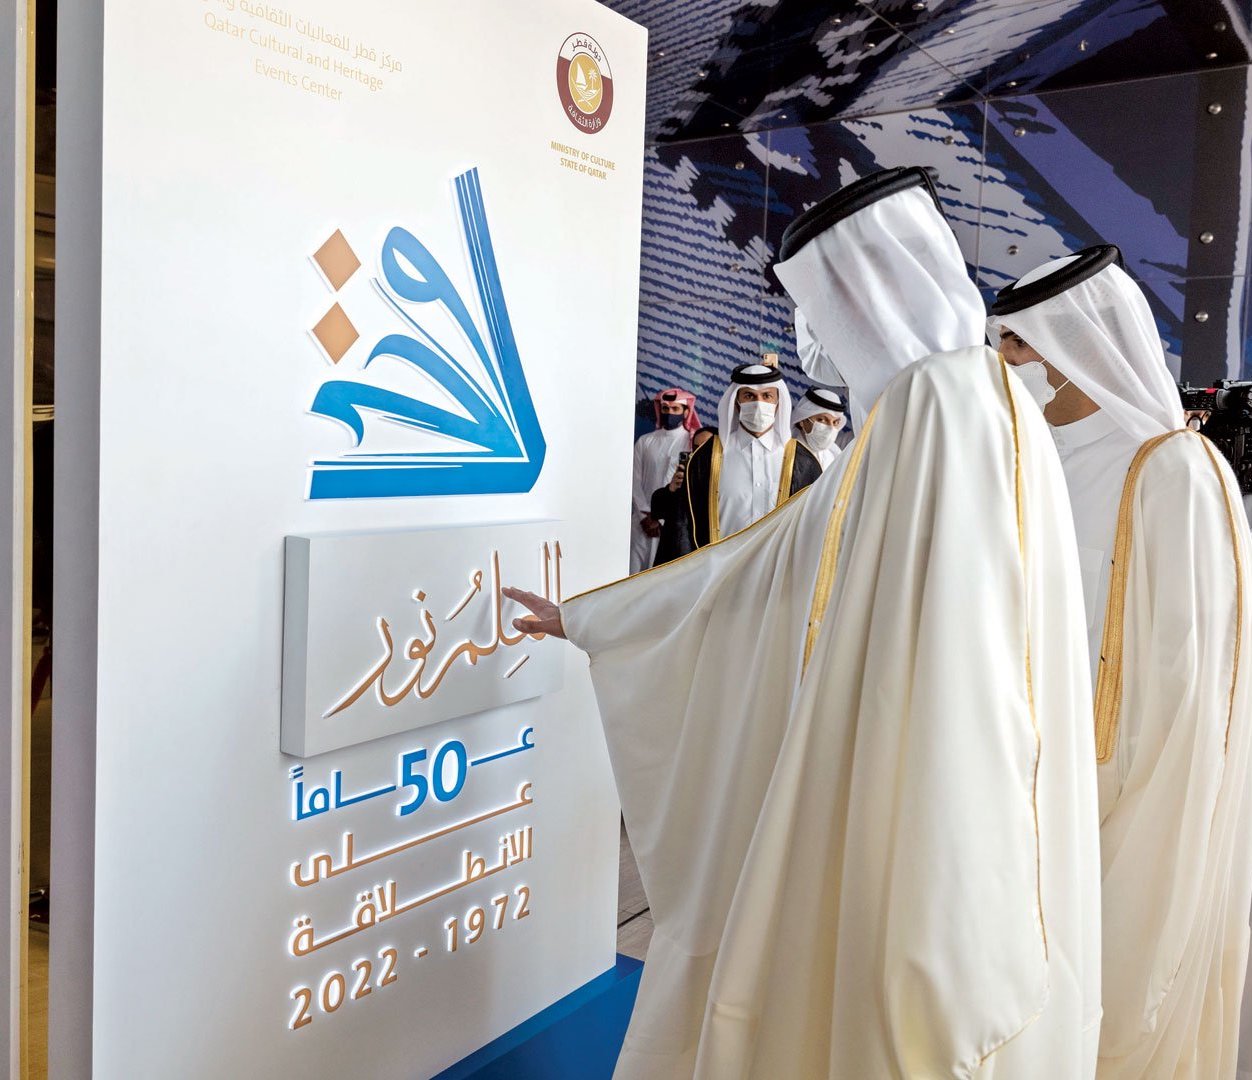 Doha International Book Fair Confirms Qatar's Cultural Leadership